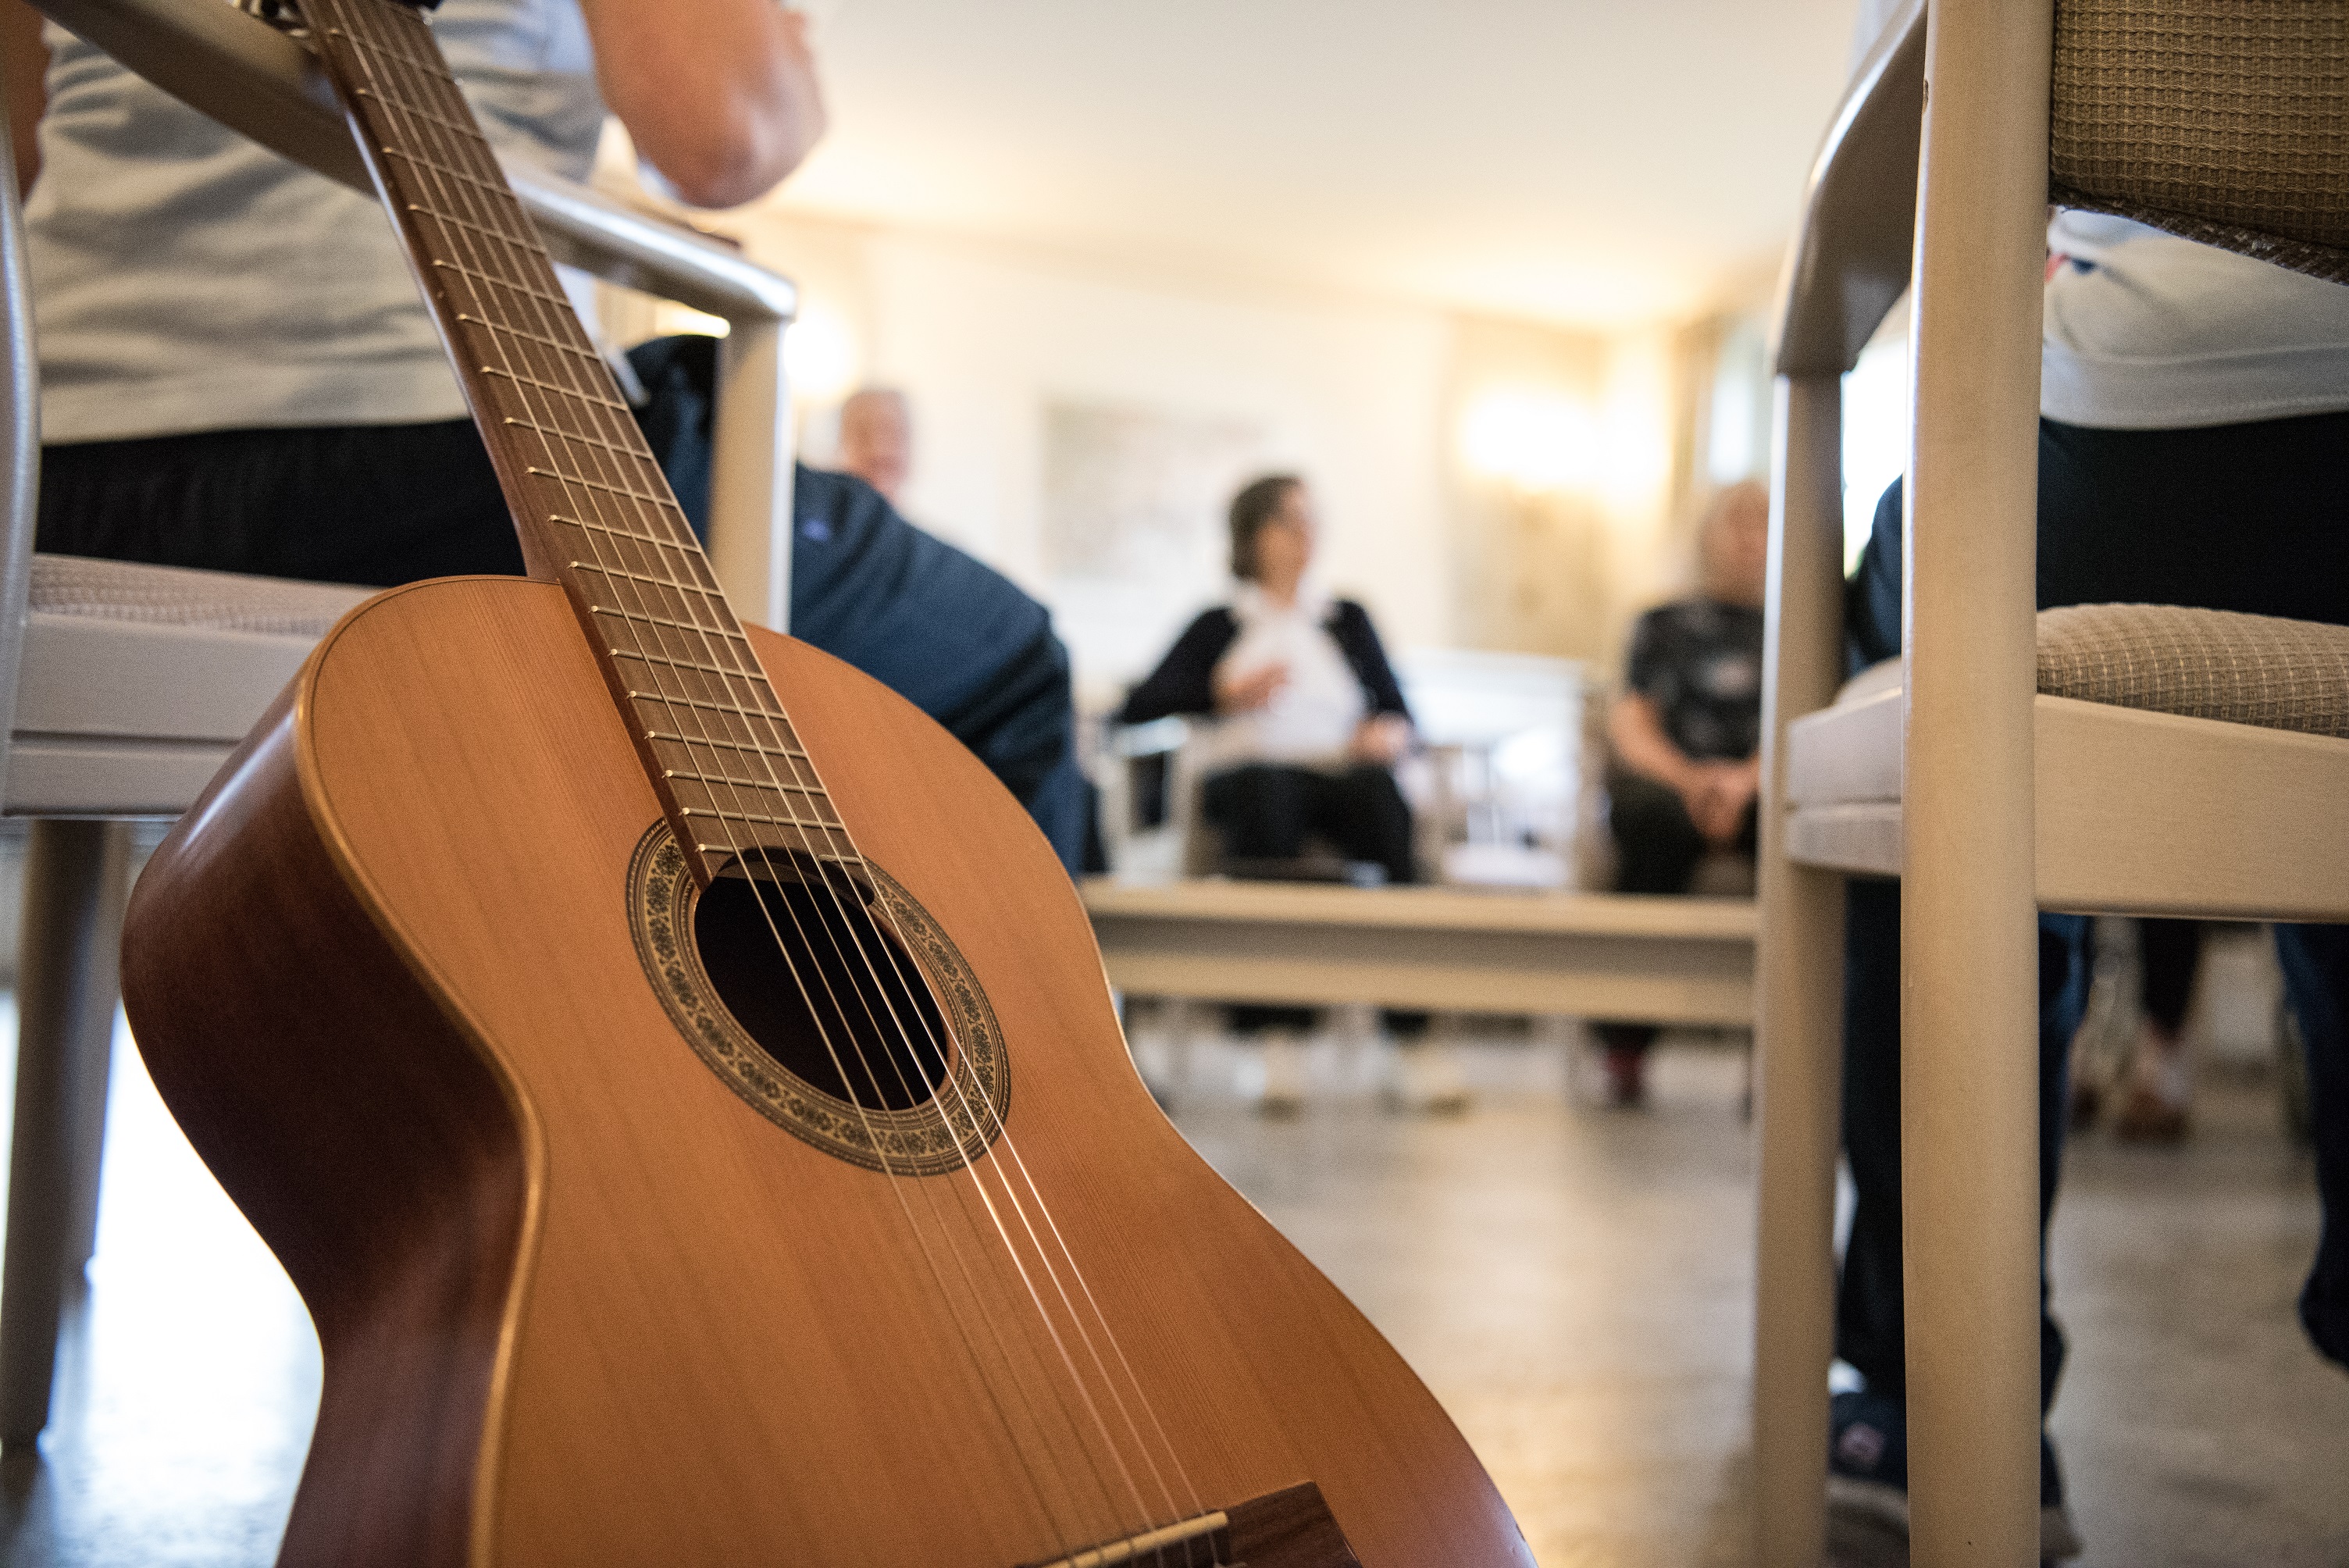 In einem Behandlungsraum befinden sich mehrere Patient*innen mit musikalischen Instrumenten, unter anderem einer Gitarre.